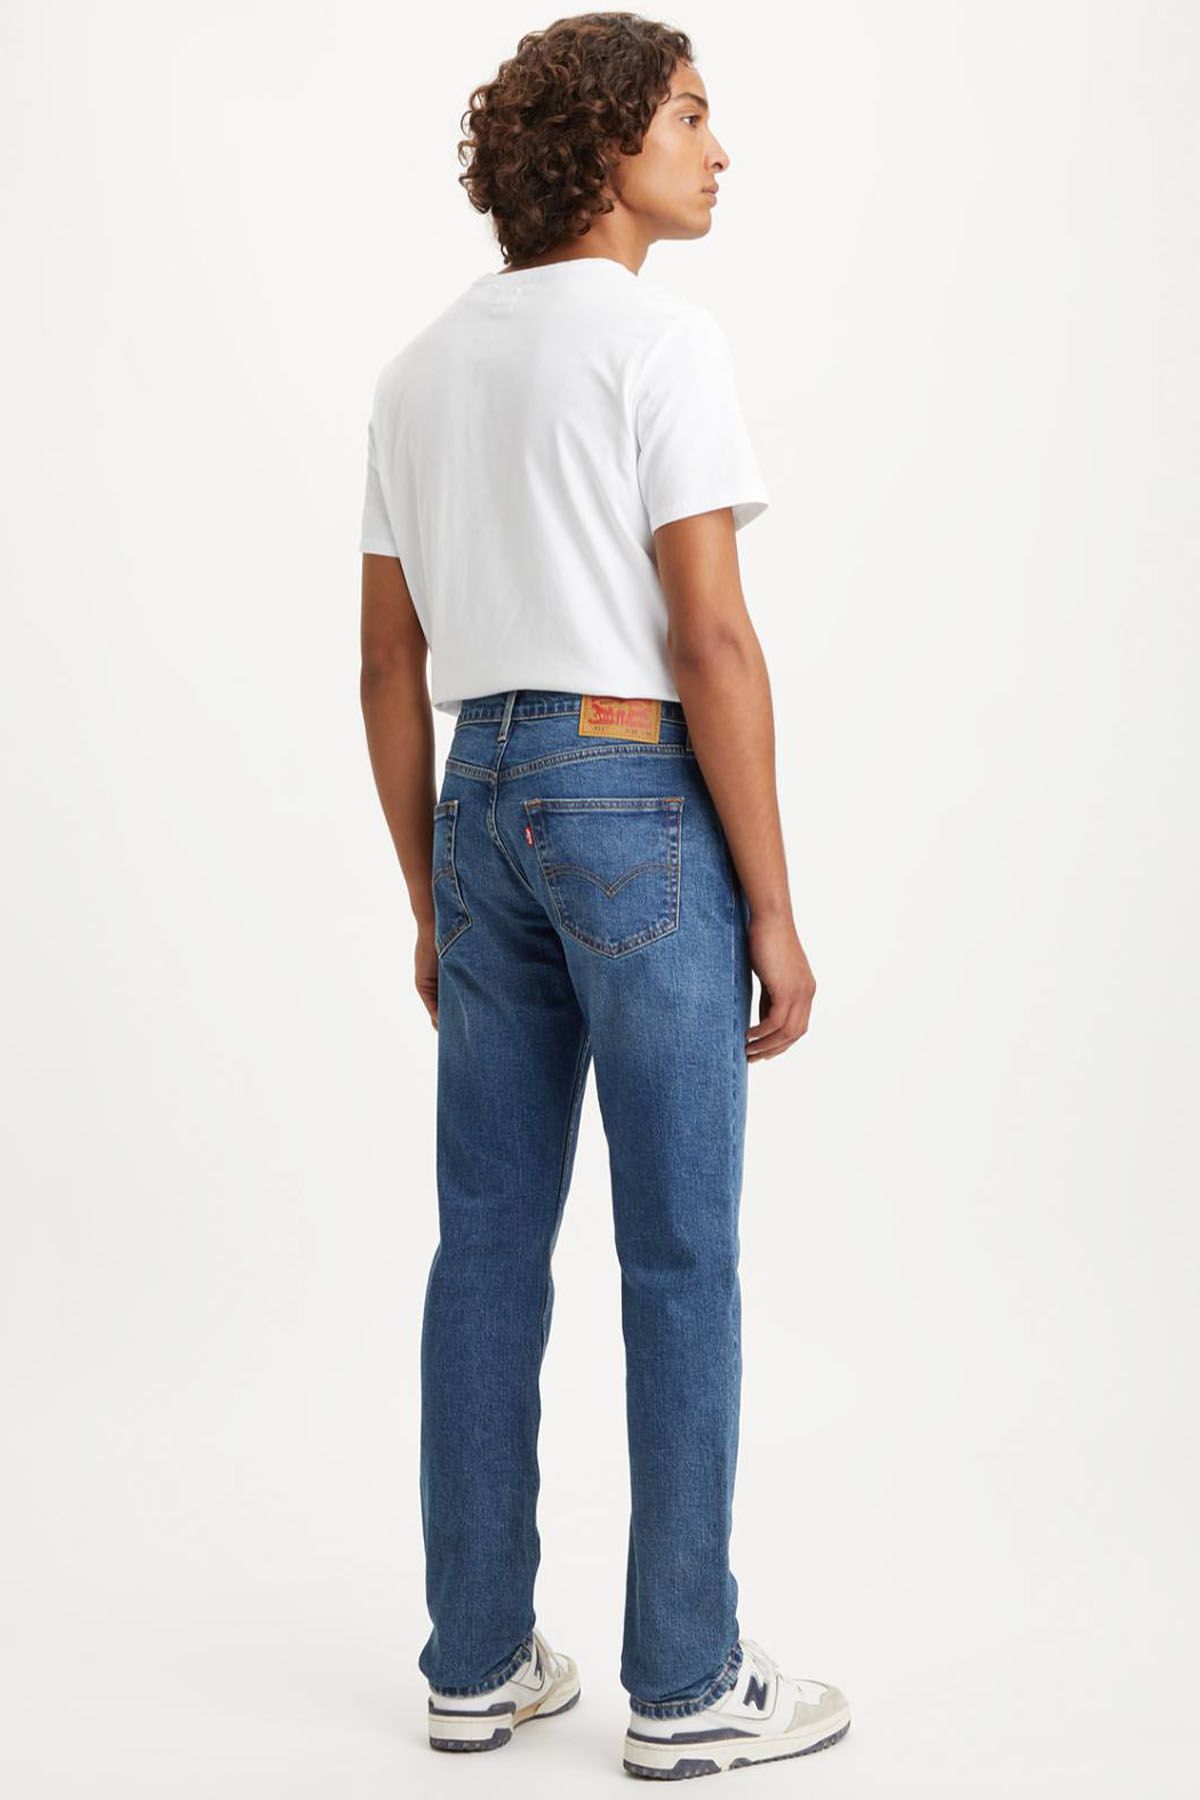 Levi's ® Levi's Men's 511 Slim Fit JeanSMedium Indigo Men Jeans